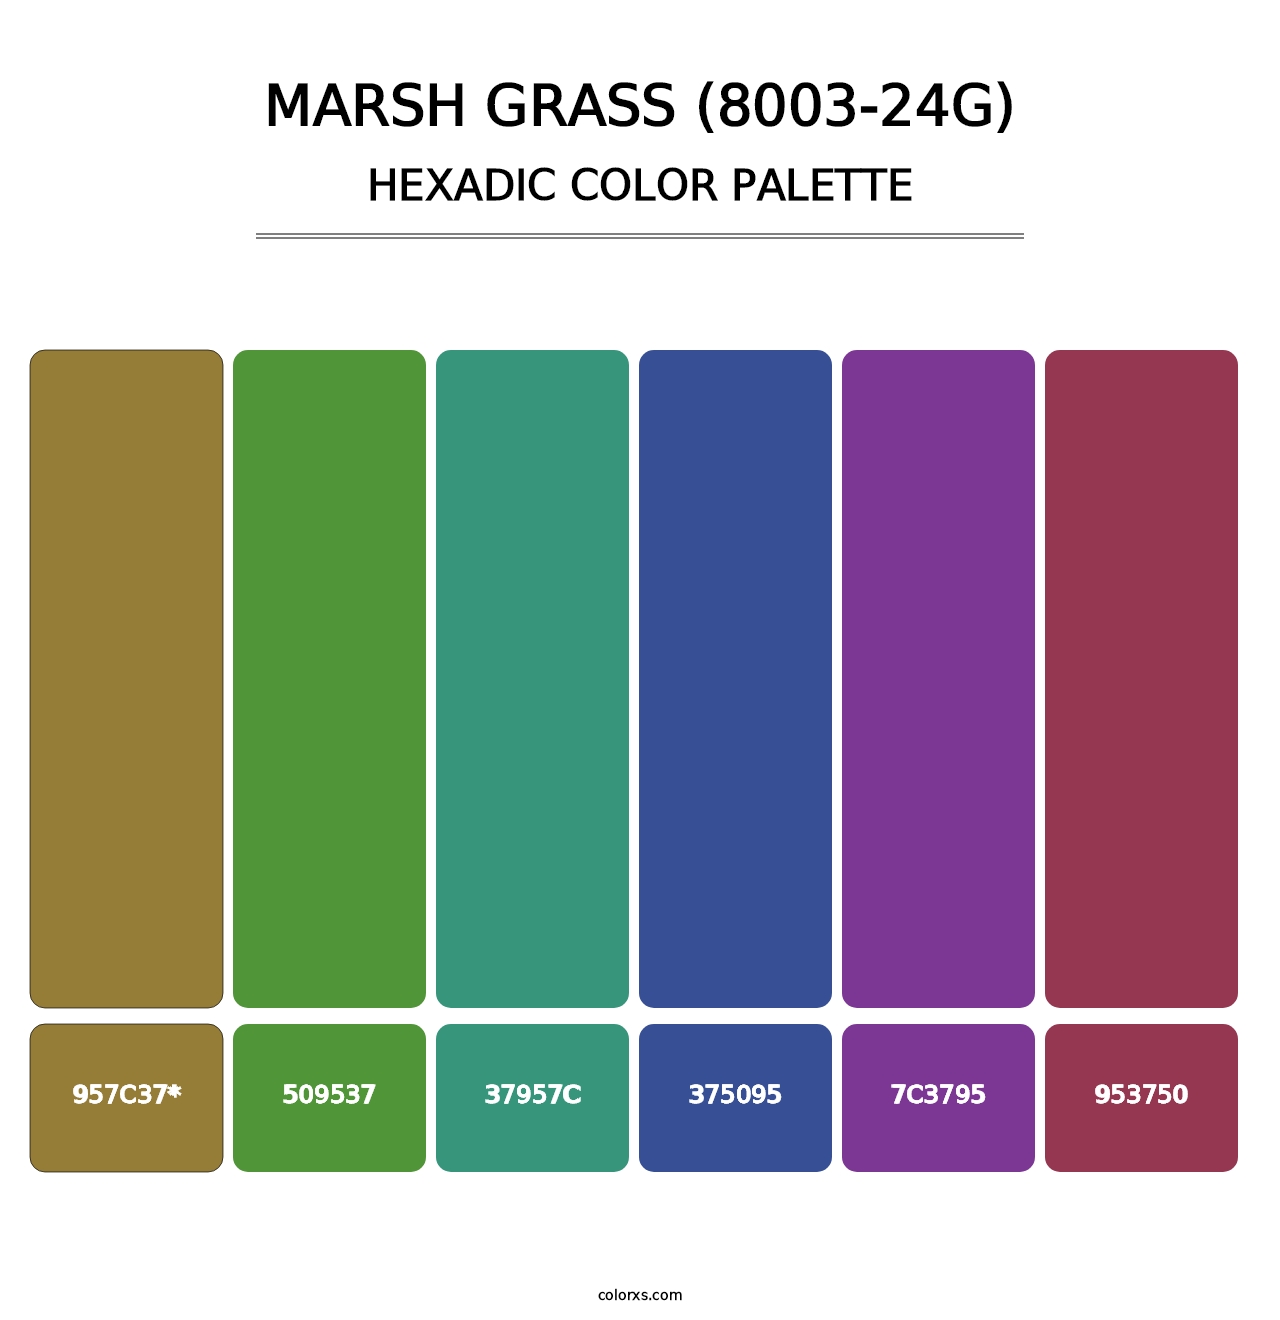 Marsh Grass (8003-24G) - Hexadic Color Palette